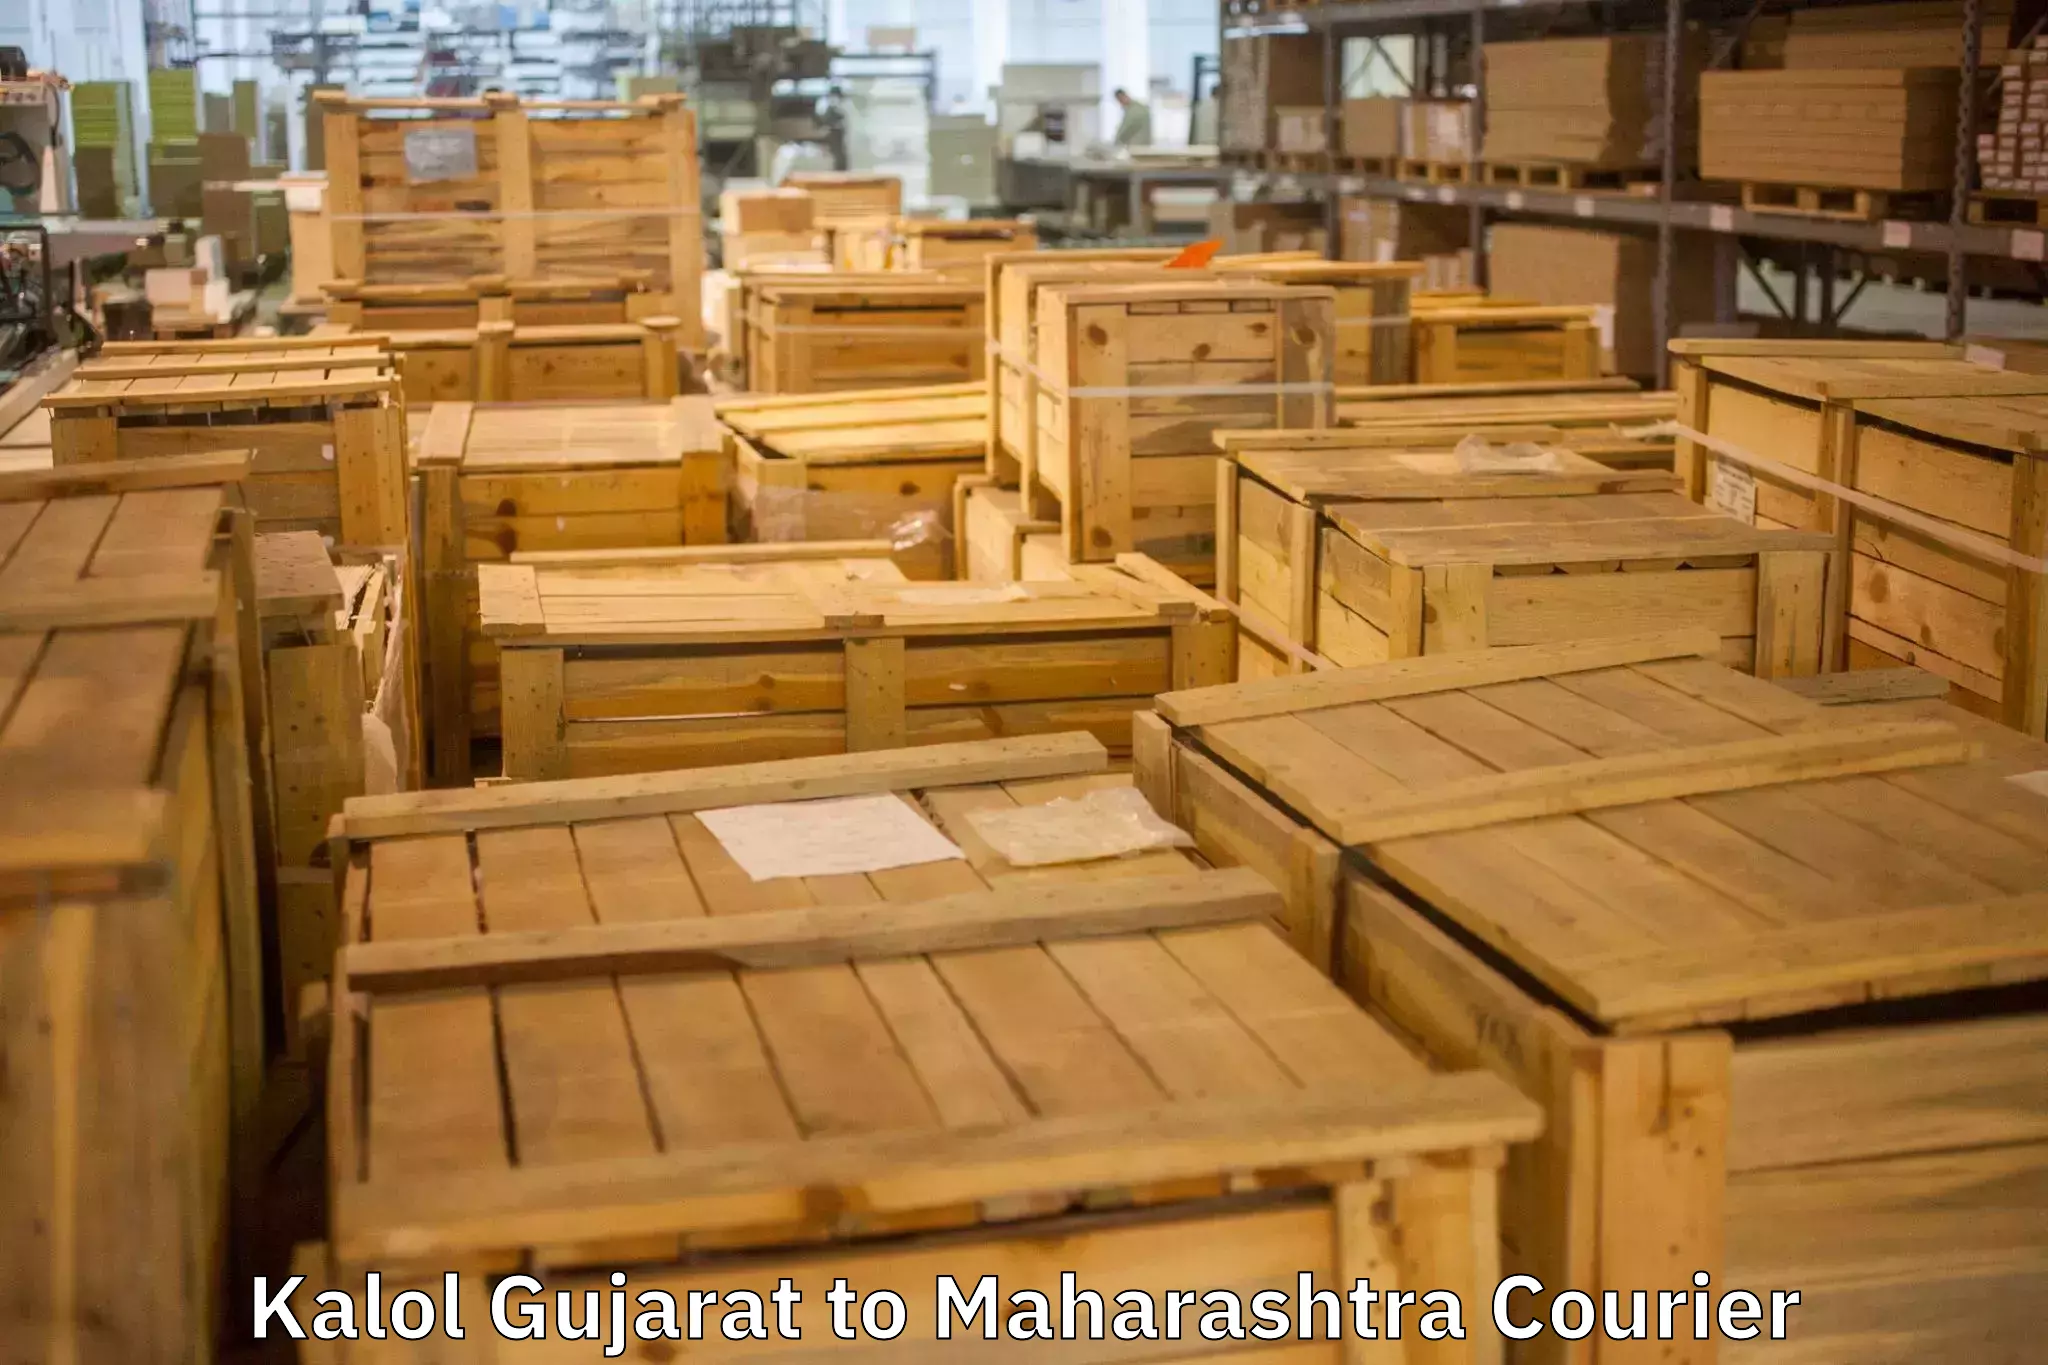 Furniture moving experts Kalol Gujarat to Madgyal